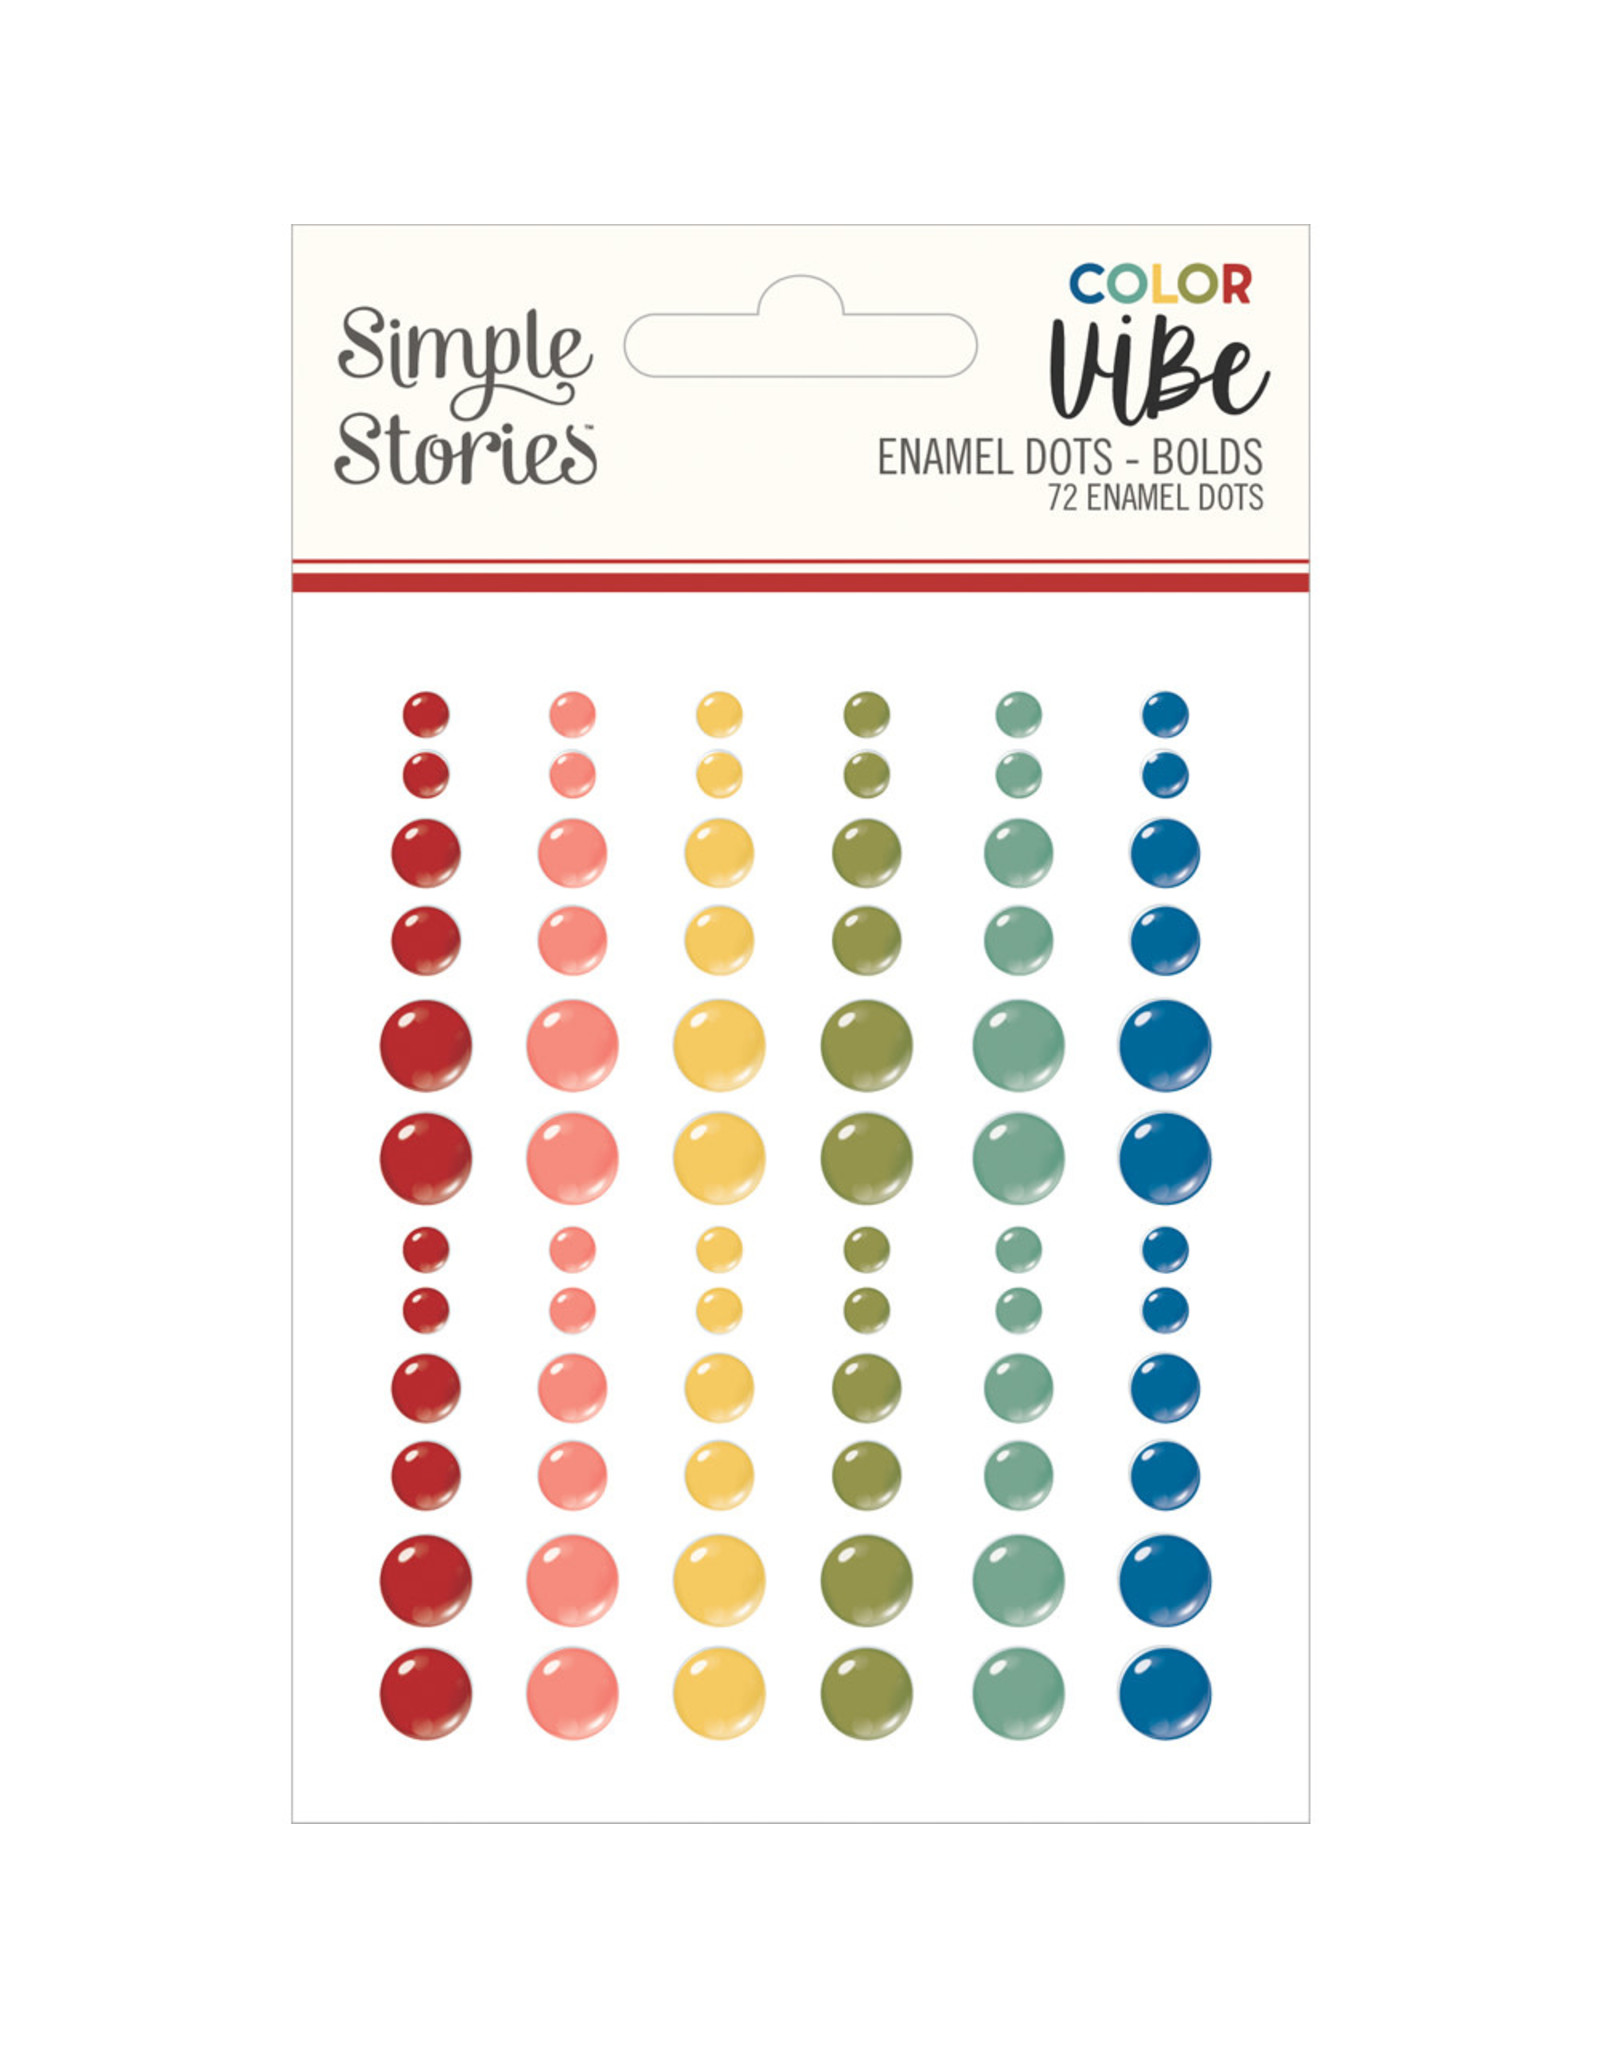 Simple Stories Color Vibe Enamel Dots - Bolds